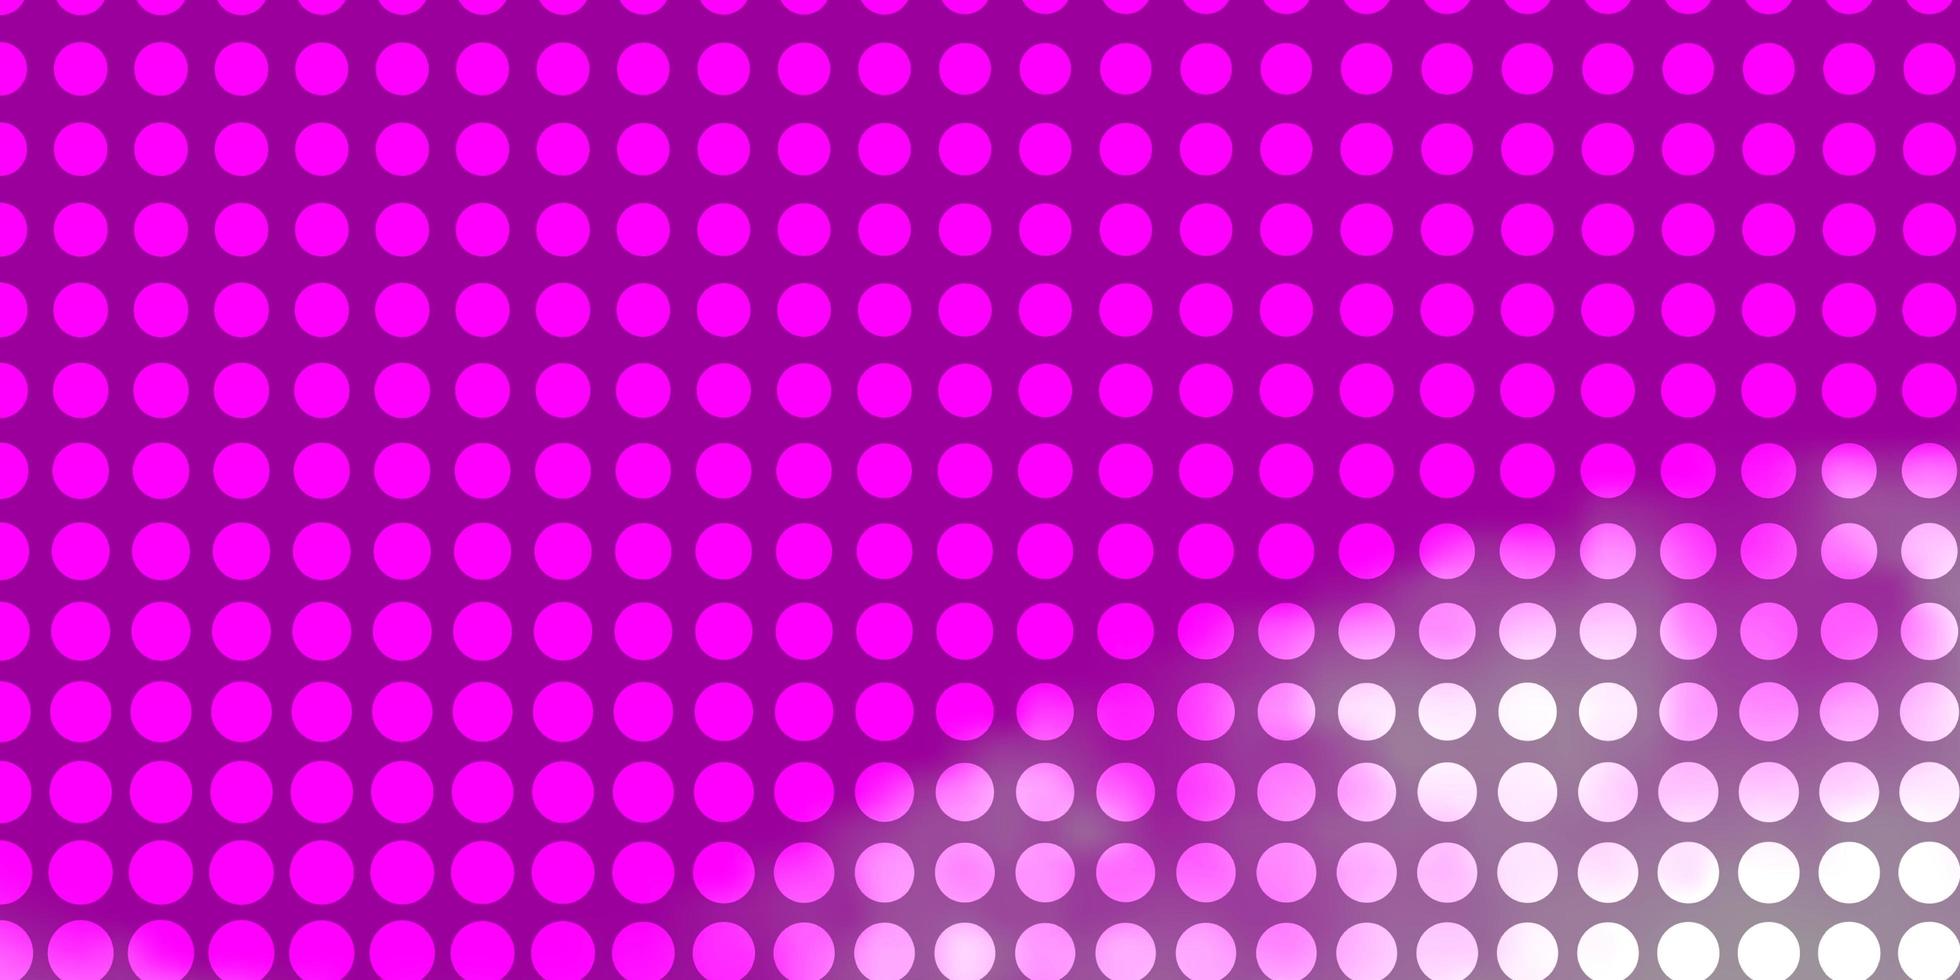 ljuslila, rosa vektormönster med cirklar. vektor